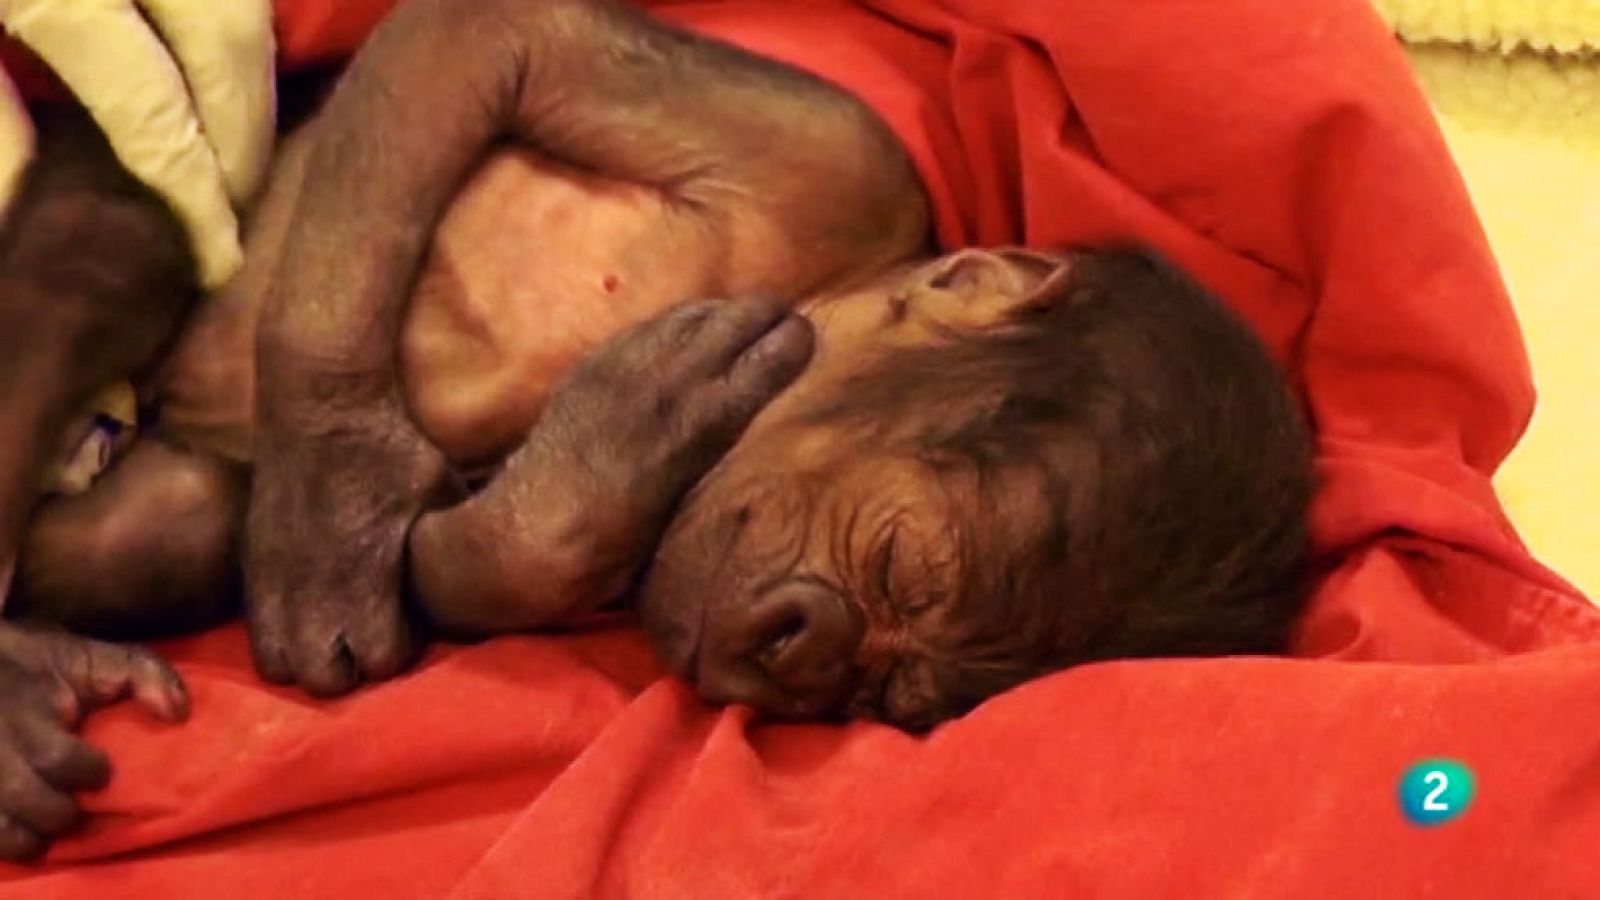 La 2 Noticias - El nacimiento por cesárea de un gorila que ha emocionado a los británicos